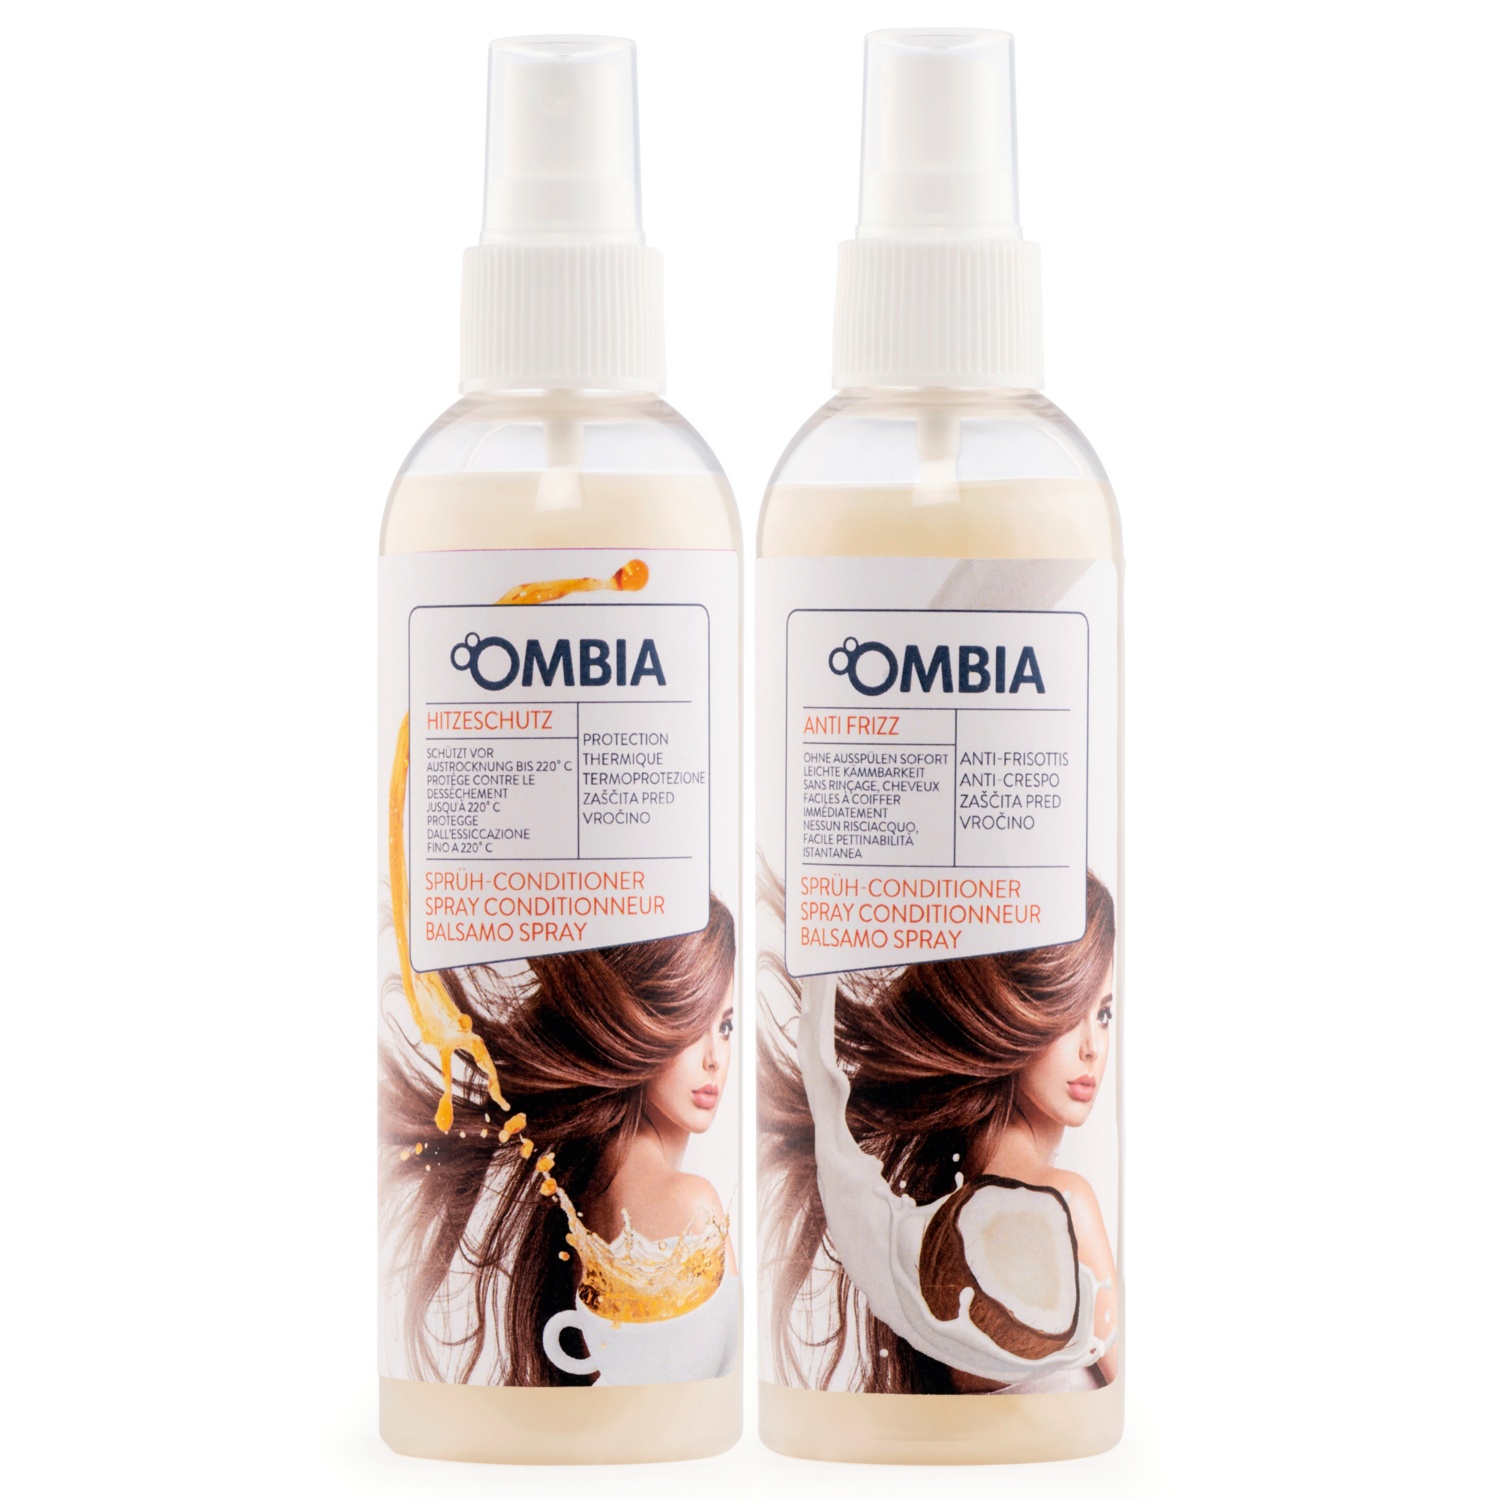 OMBIA Haarpflegespray